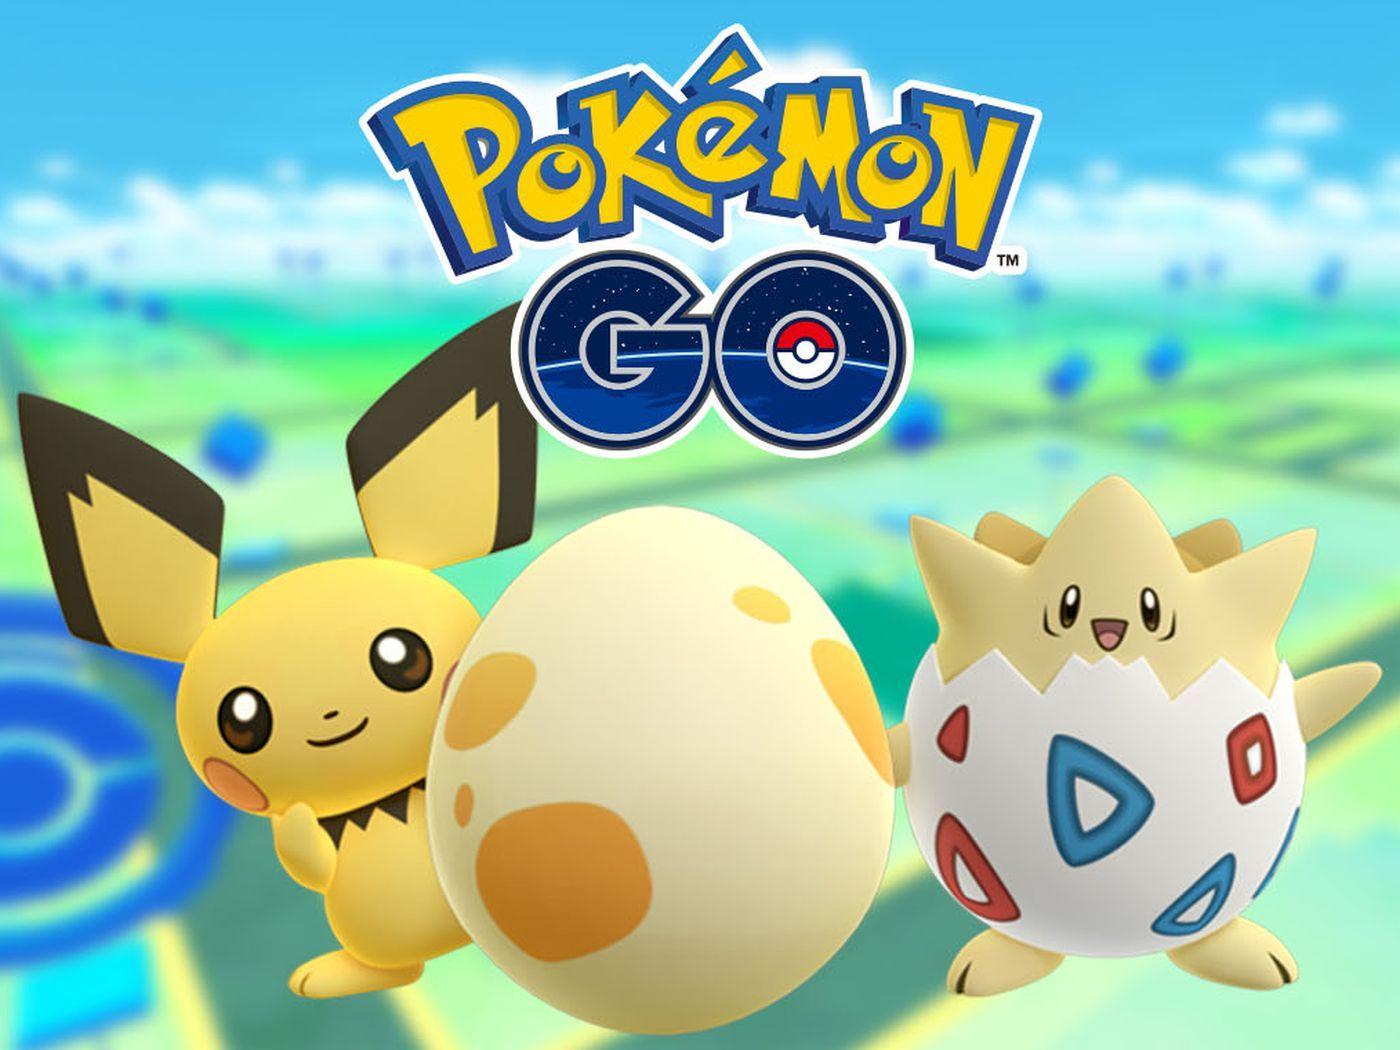 New, gen two Pokémon are making their way to Pokémon Go right now